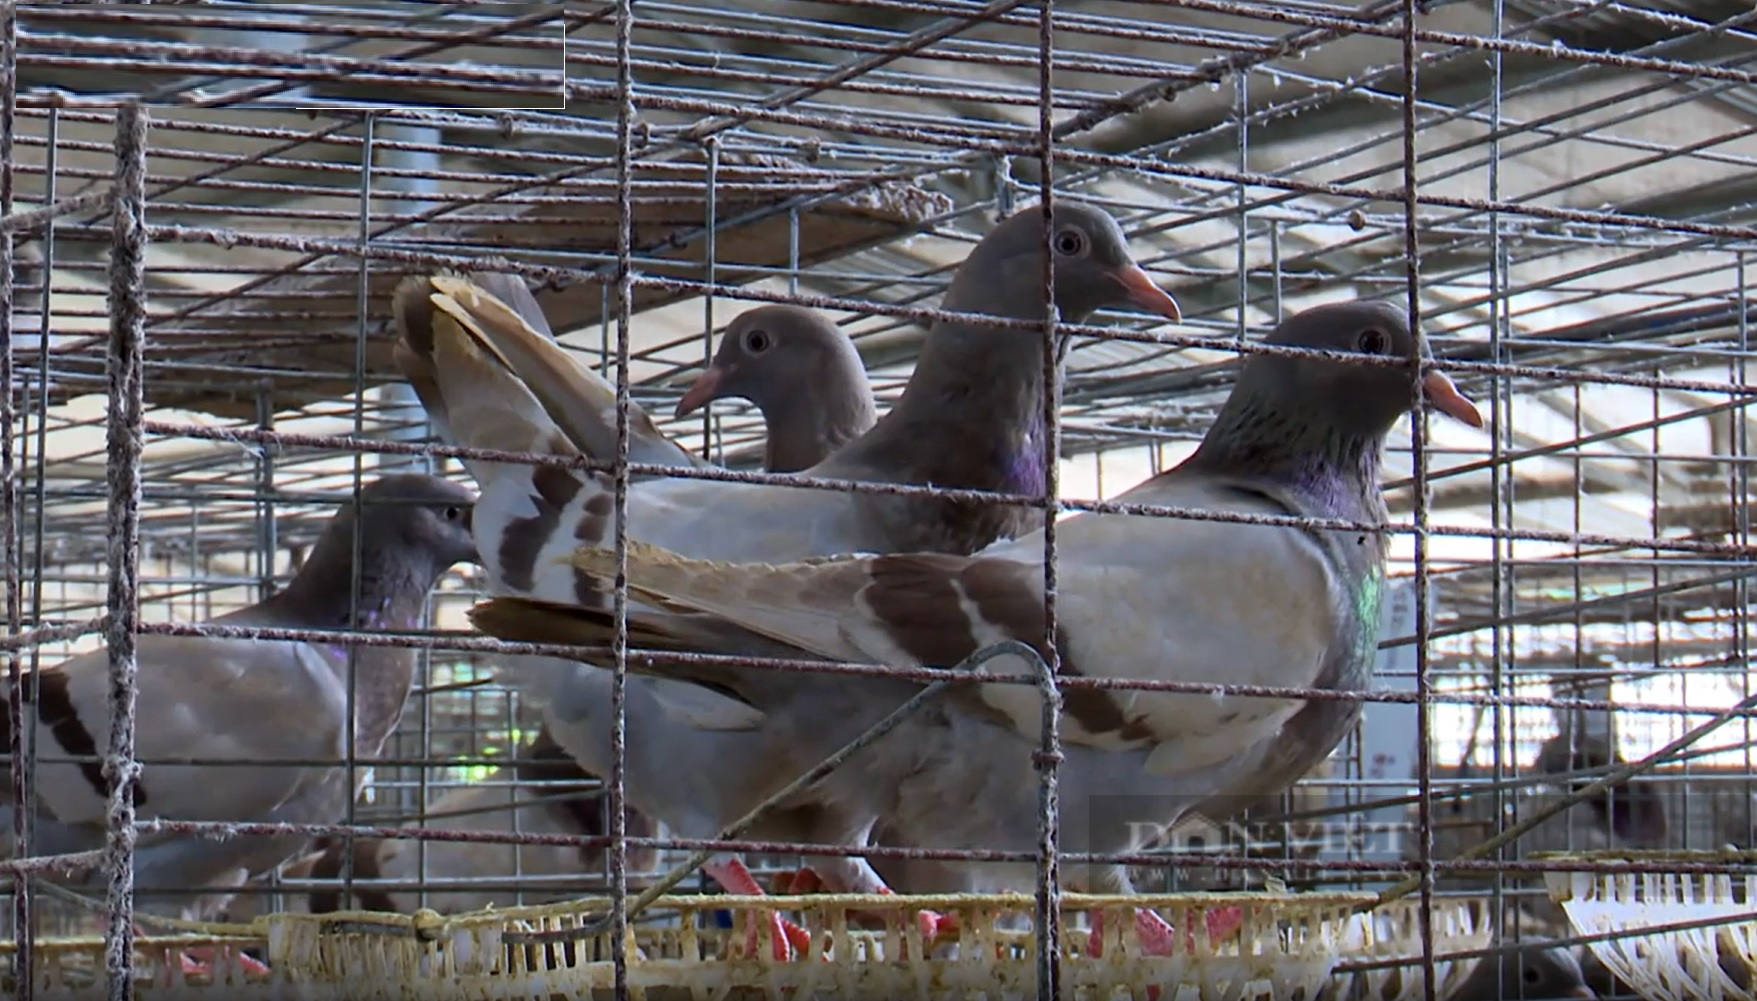 Nuôi 13.000 đôi chim bồ câu Pháp, hợp tác xã ở Phú Thọ đút túi vài tỷ một năm - Ảnh 3.